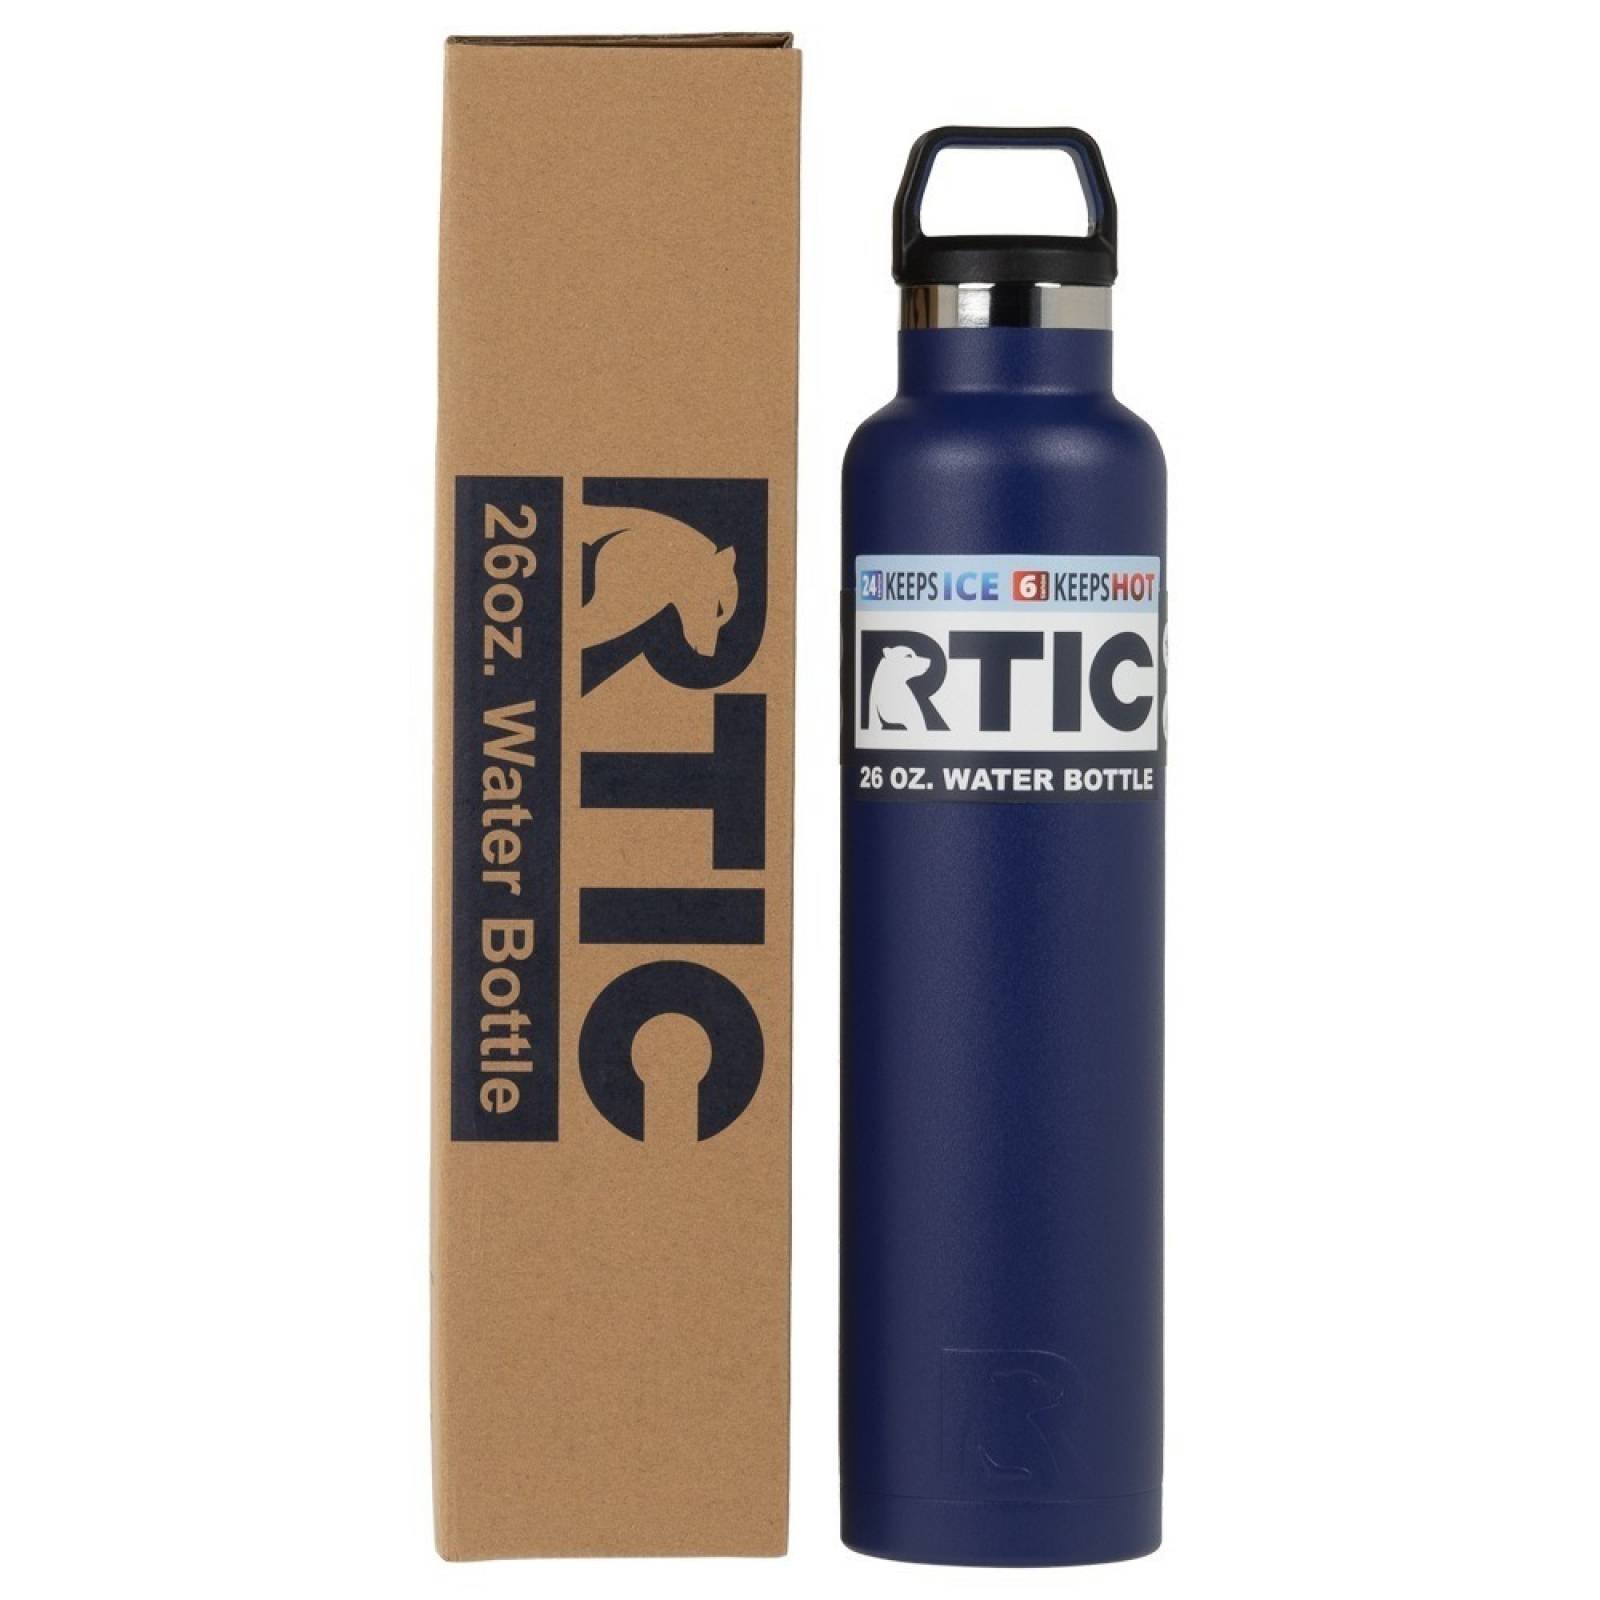 RTIC Water Bottle 26 oz. Freedom Blue Matte   1031